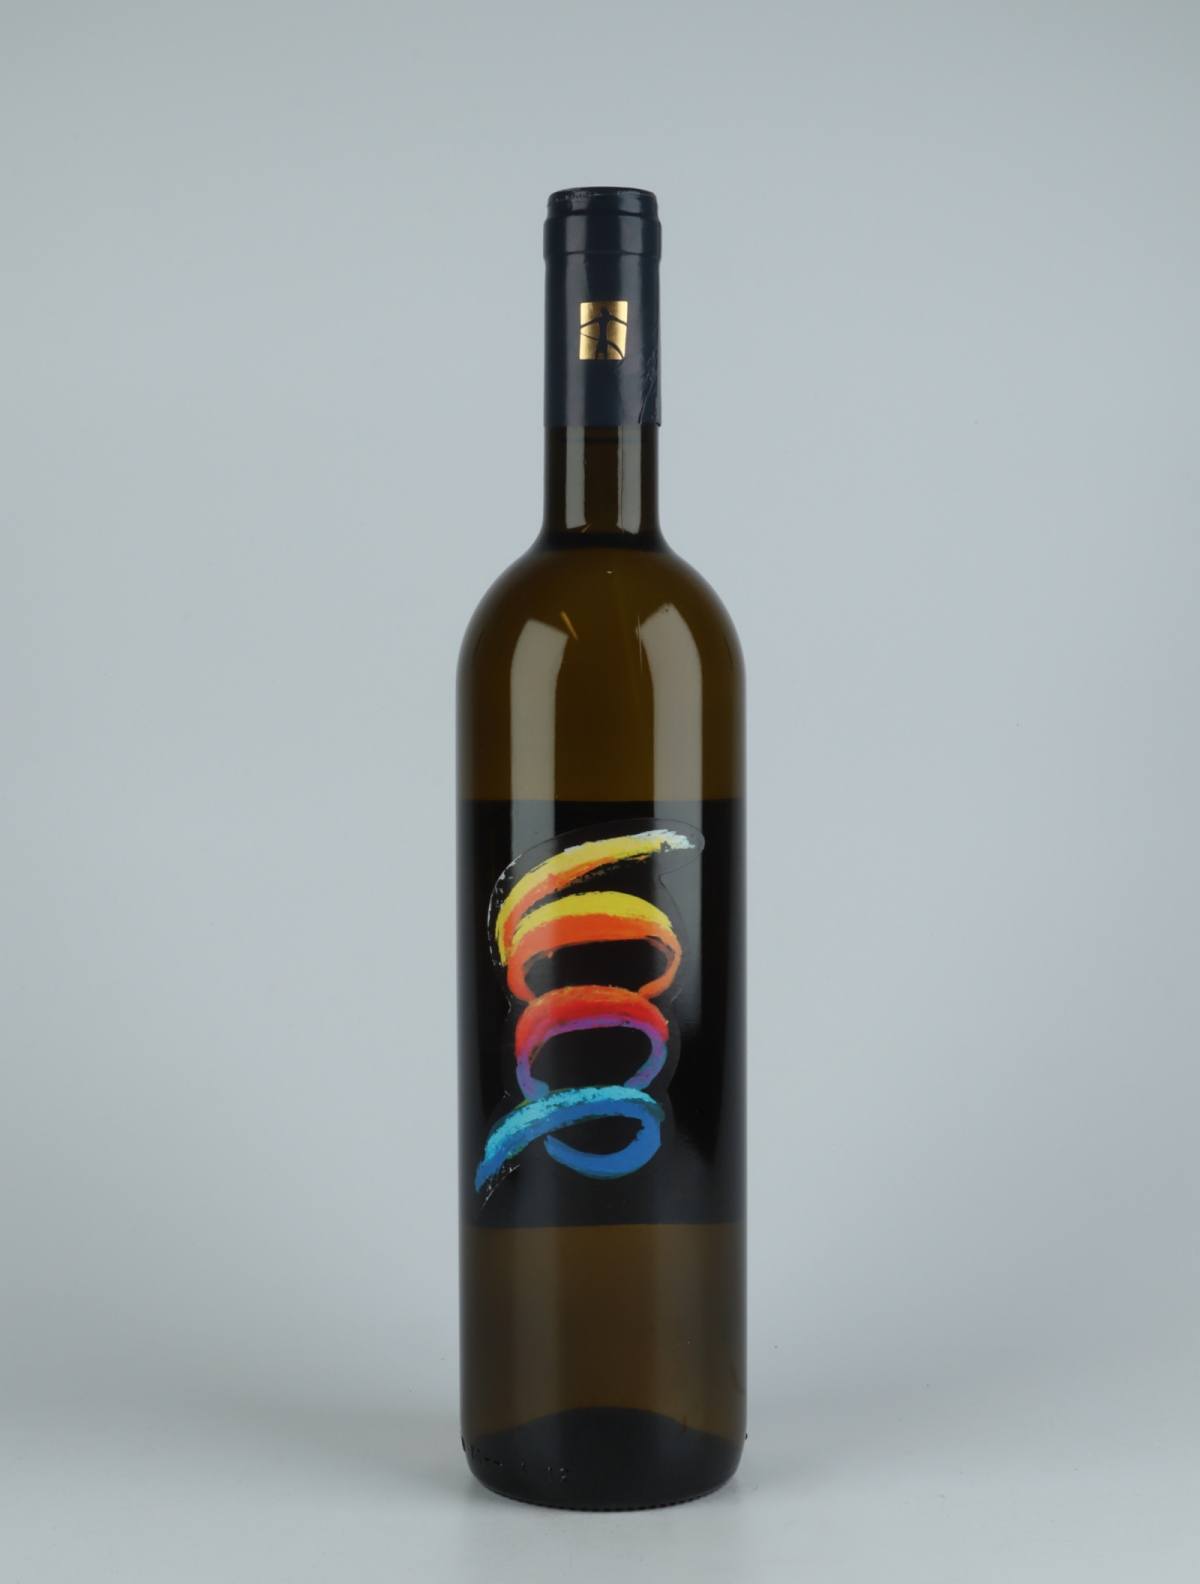 En flaske 2019 Rebosso Hvidvin fra Tenuta Selvadolce, Ligurien i Italien